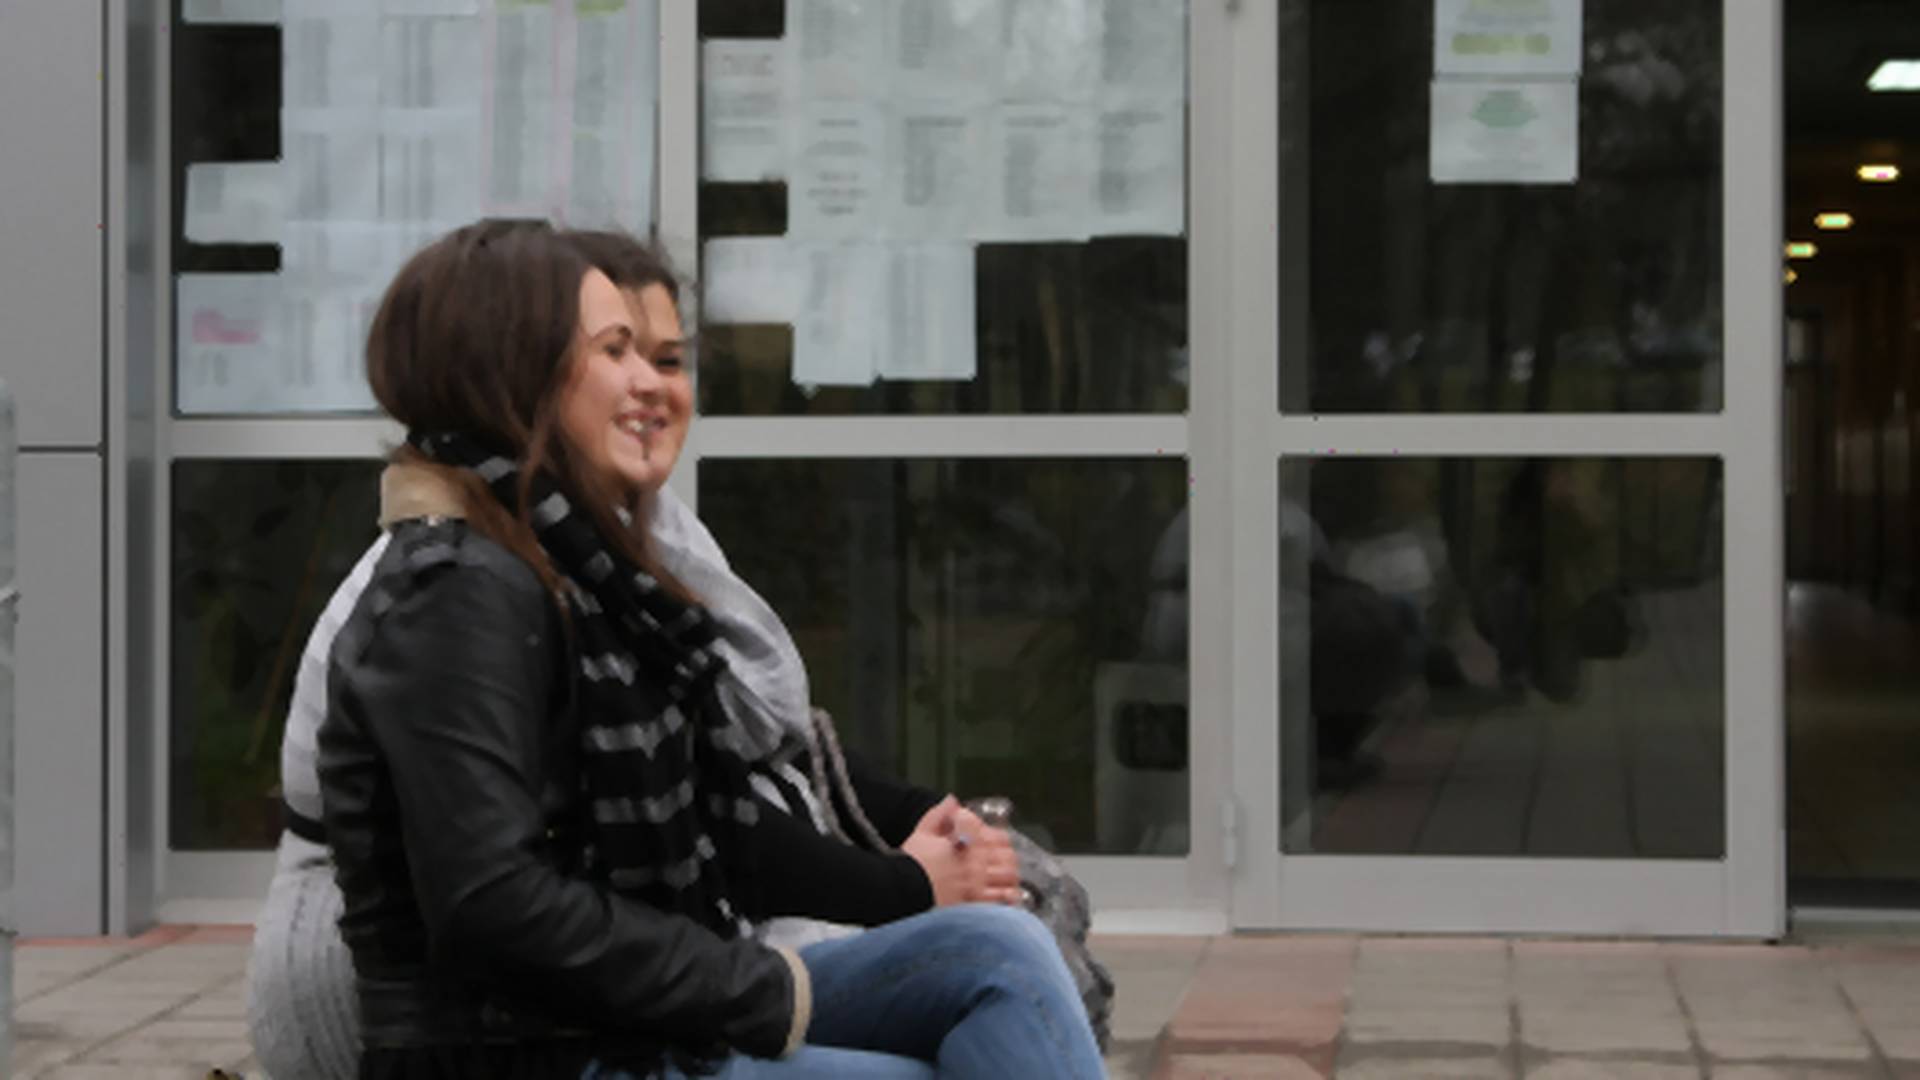 Istraživajne pokazalo šta mladi očekuju od obrazovanja u Srbiji